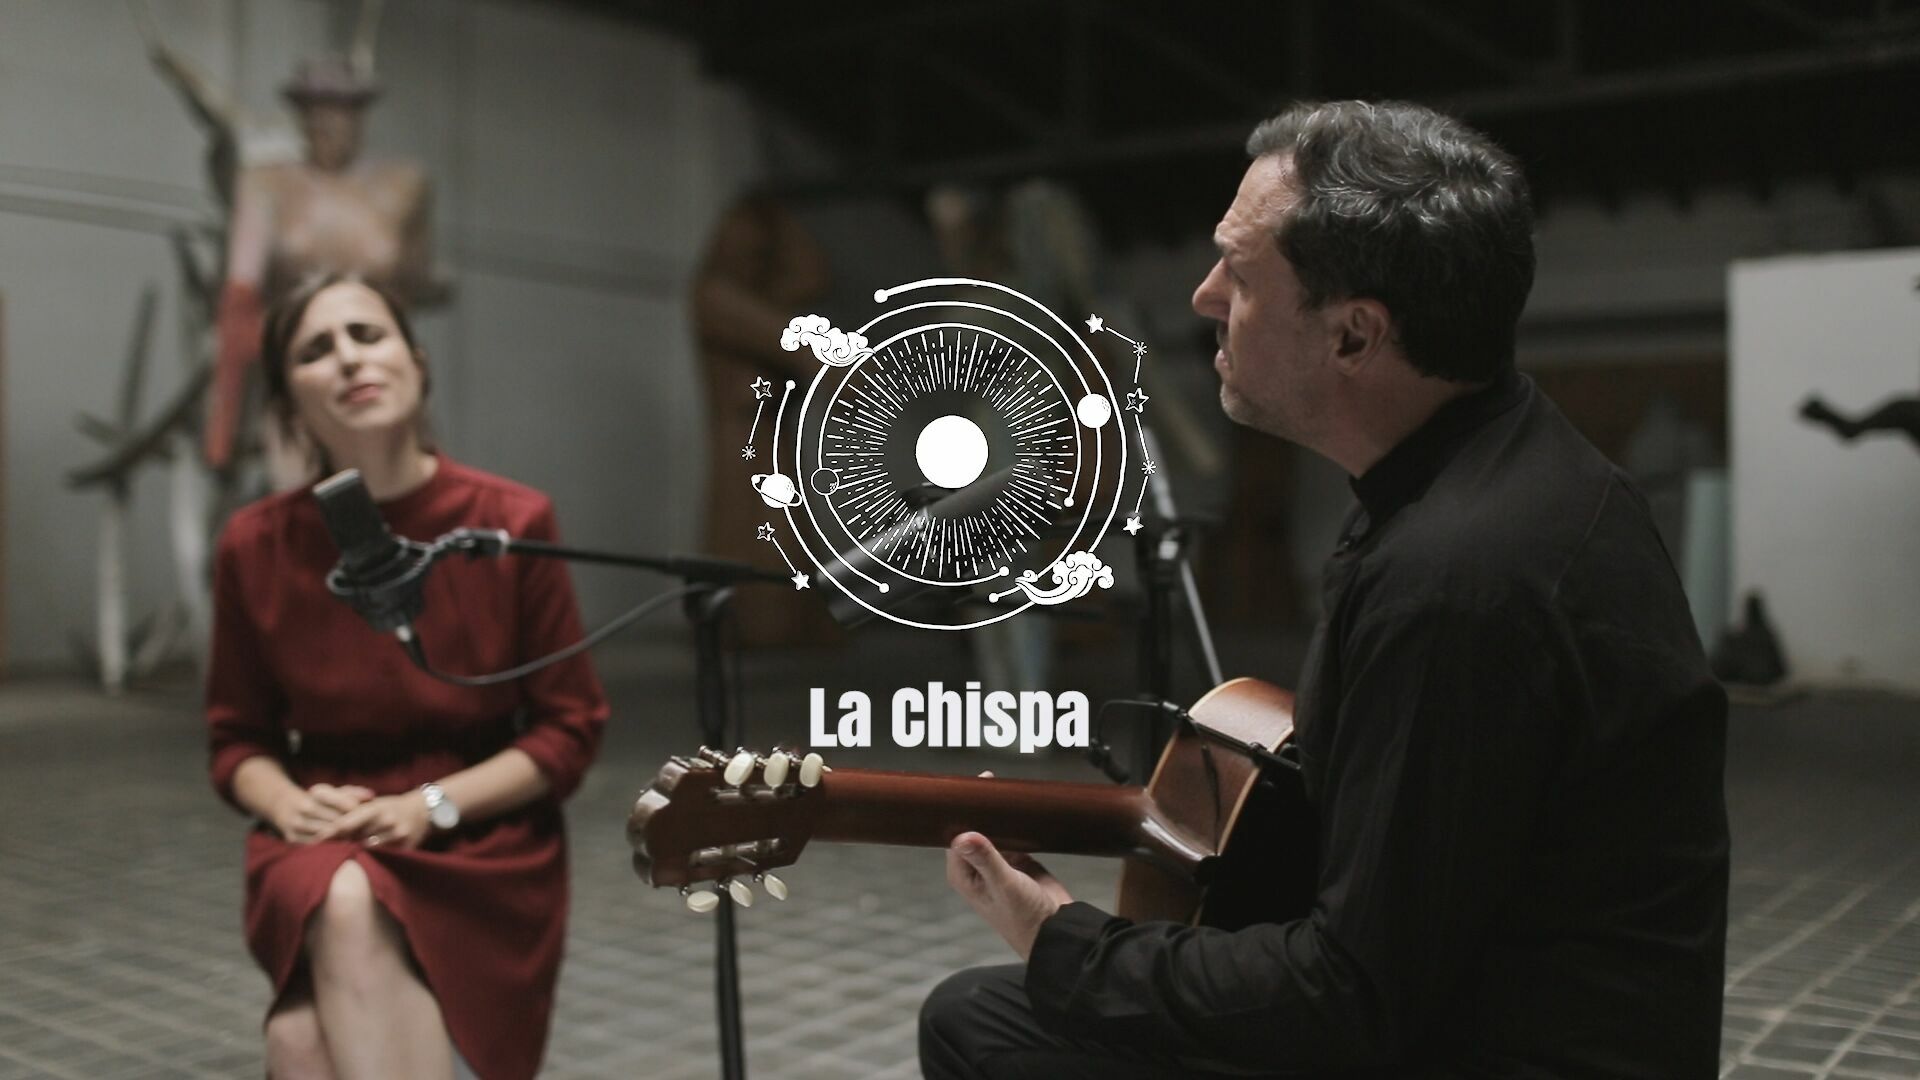 Fon Román presenta ‘La Chispa’, su nuevo single